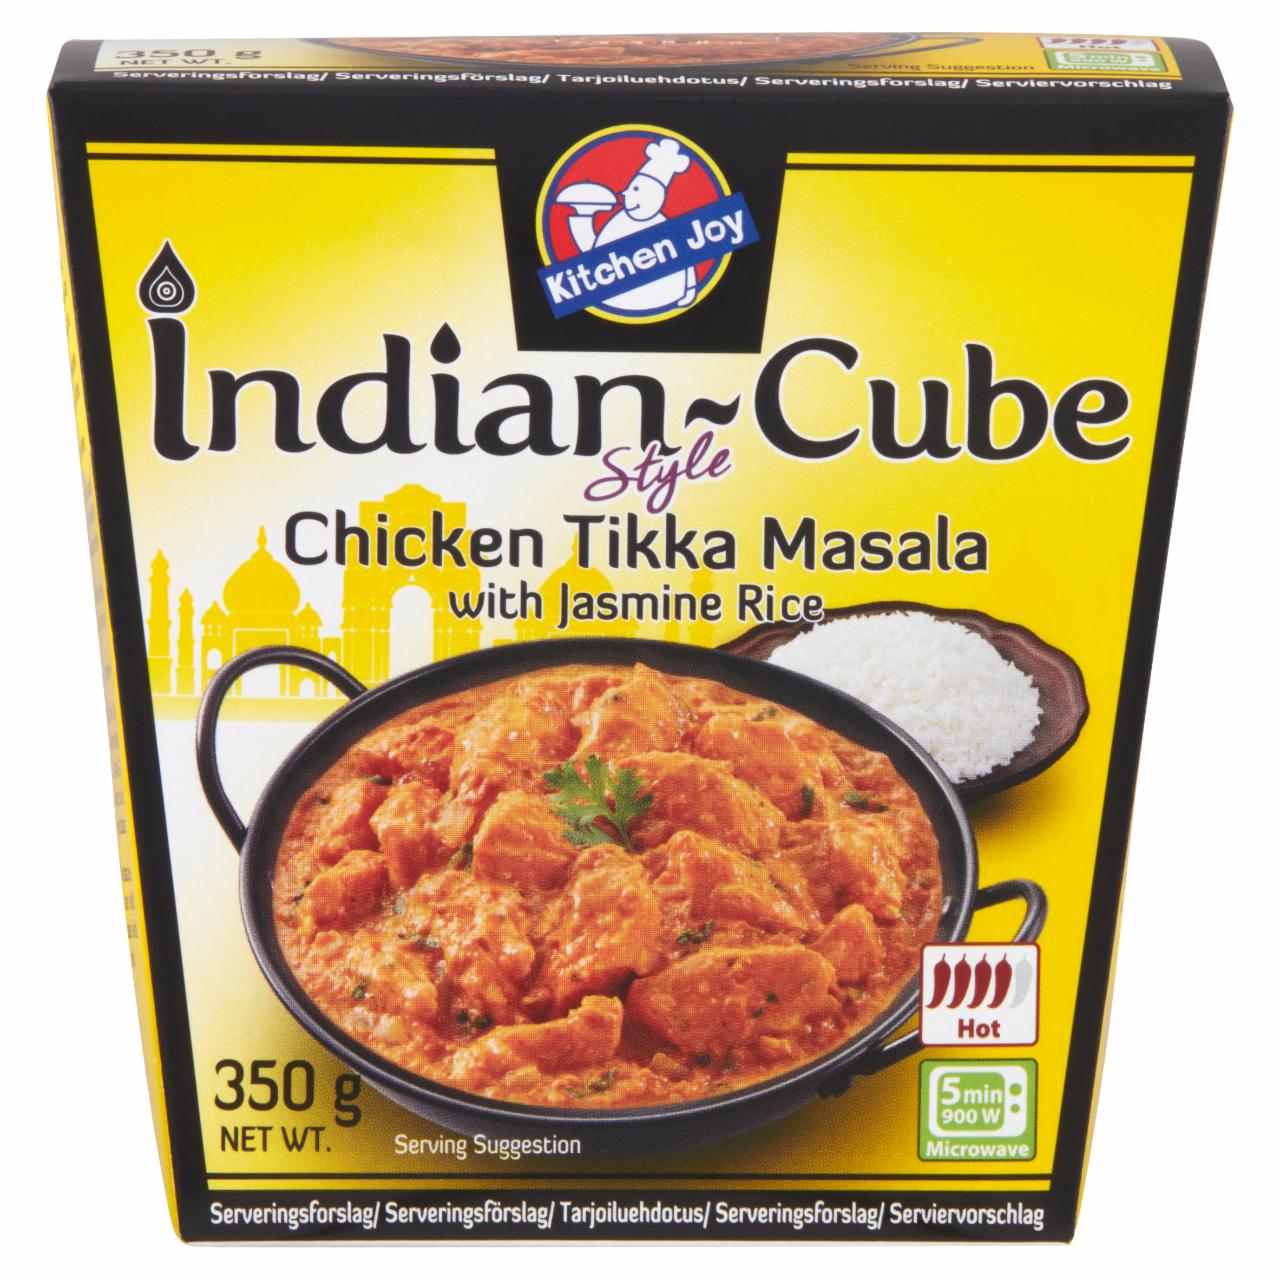 Képek - Kitchen Joy Indian-Cube csirkés tikka masala jázmin rizzsel 350 g